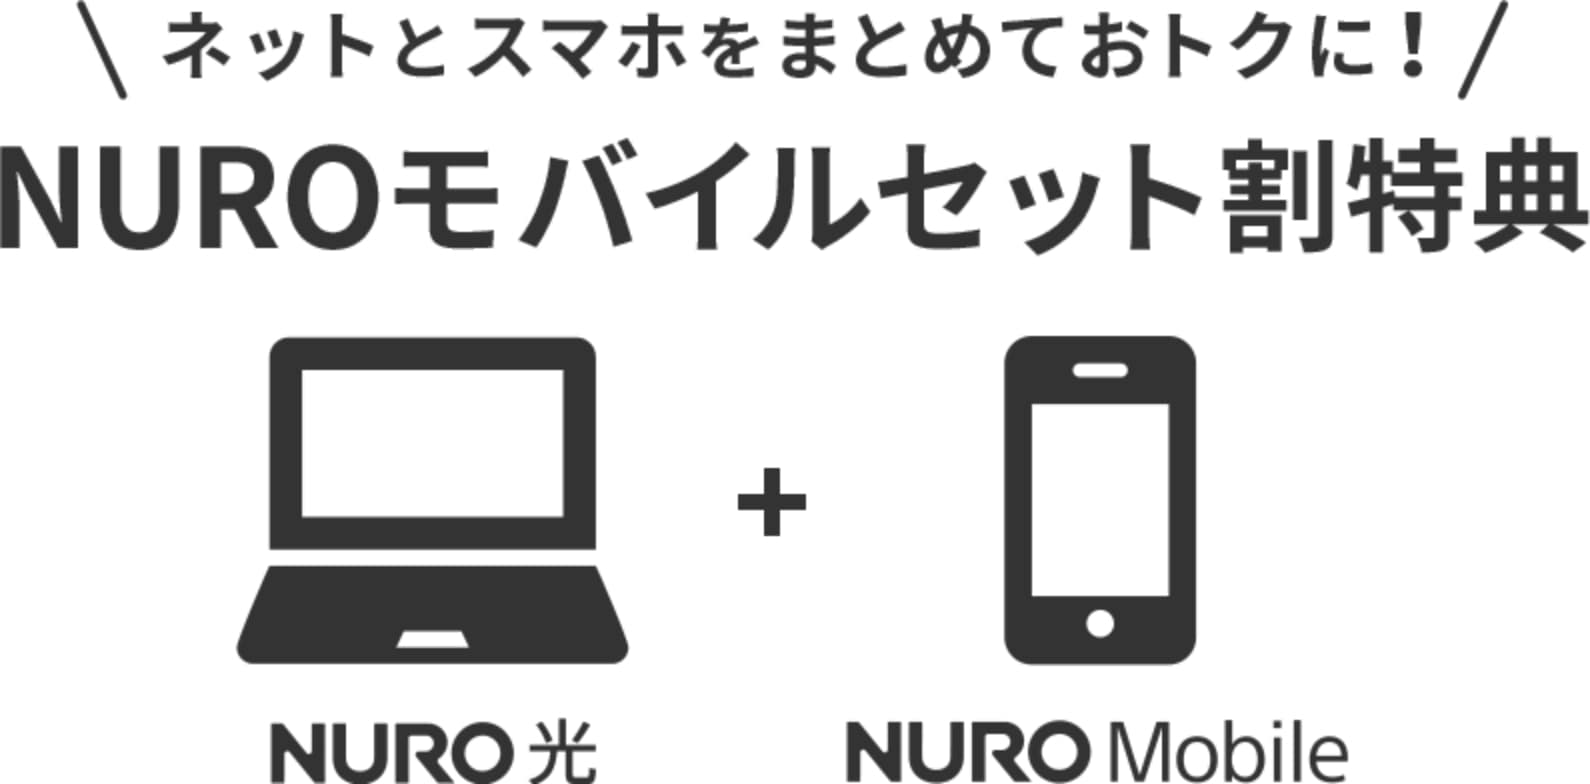 NUROモバイルはNURO光とセット契約すると割引が受けられる